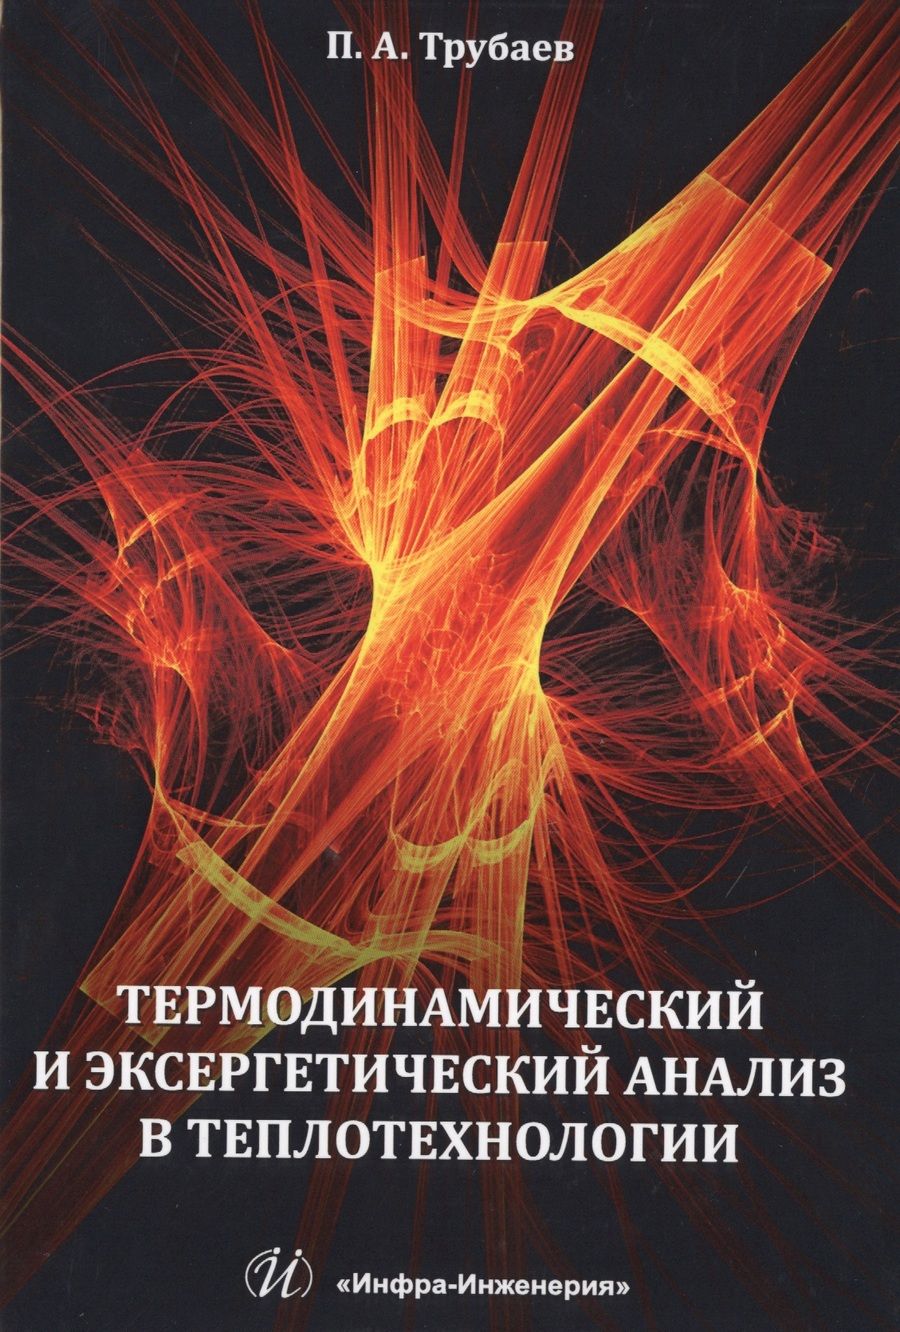 Обложка книги "Павел Трубаев: Термодинамический и эксергетический анализ в теплотехнологии"